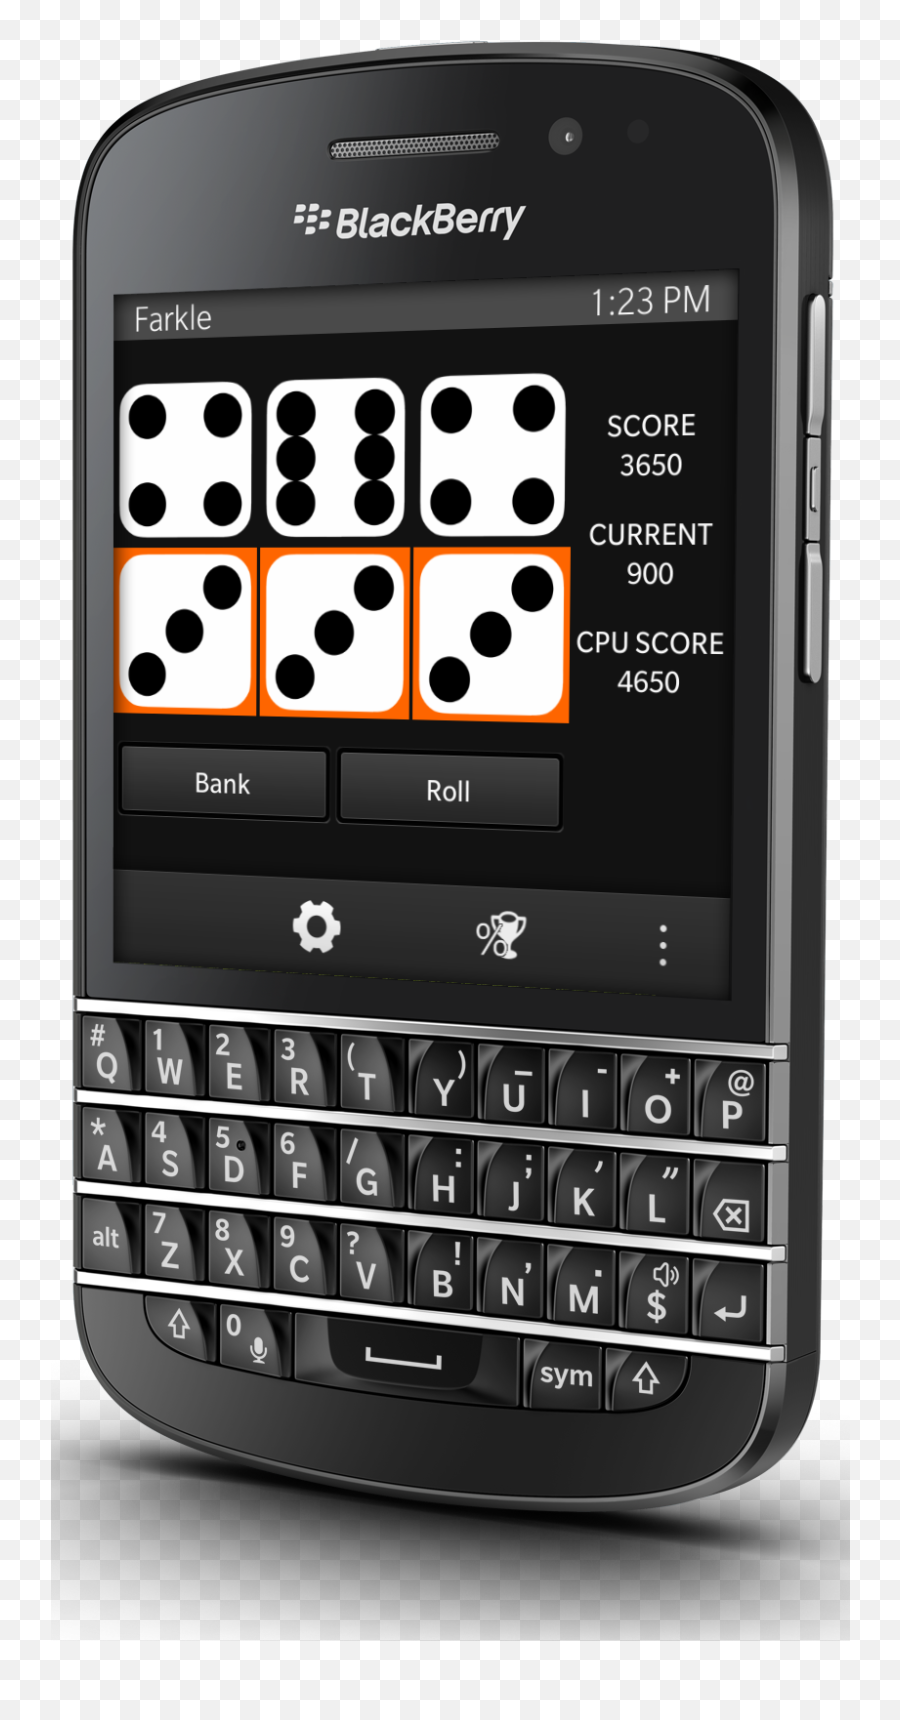 Farkle Updated For Blackberry 10 - Blackberry Phone Png,Blackberry World App Icon